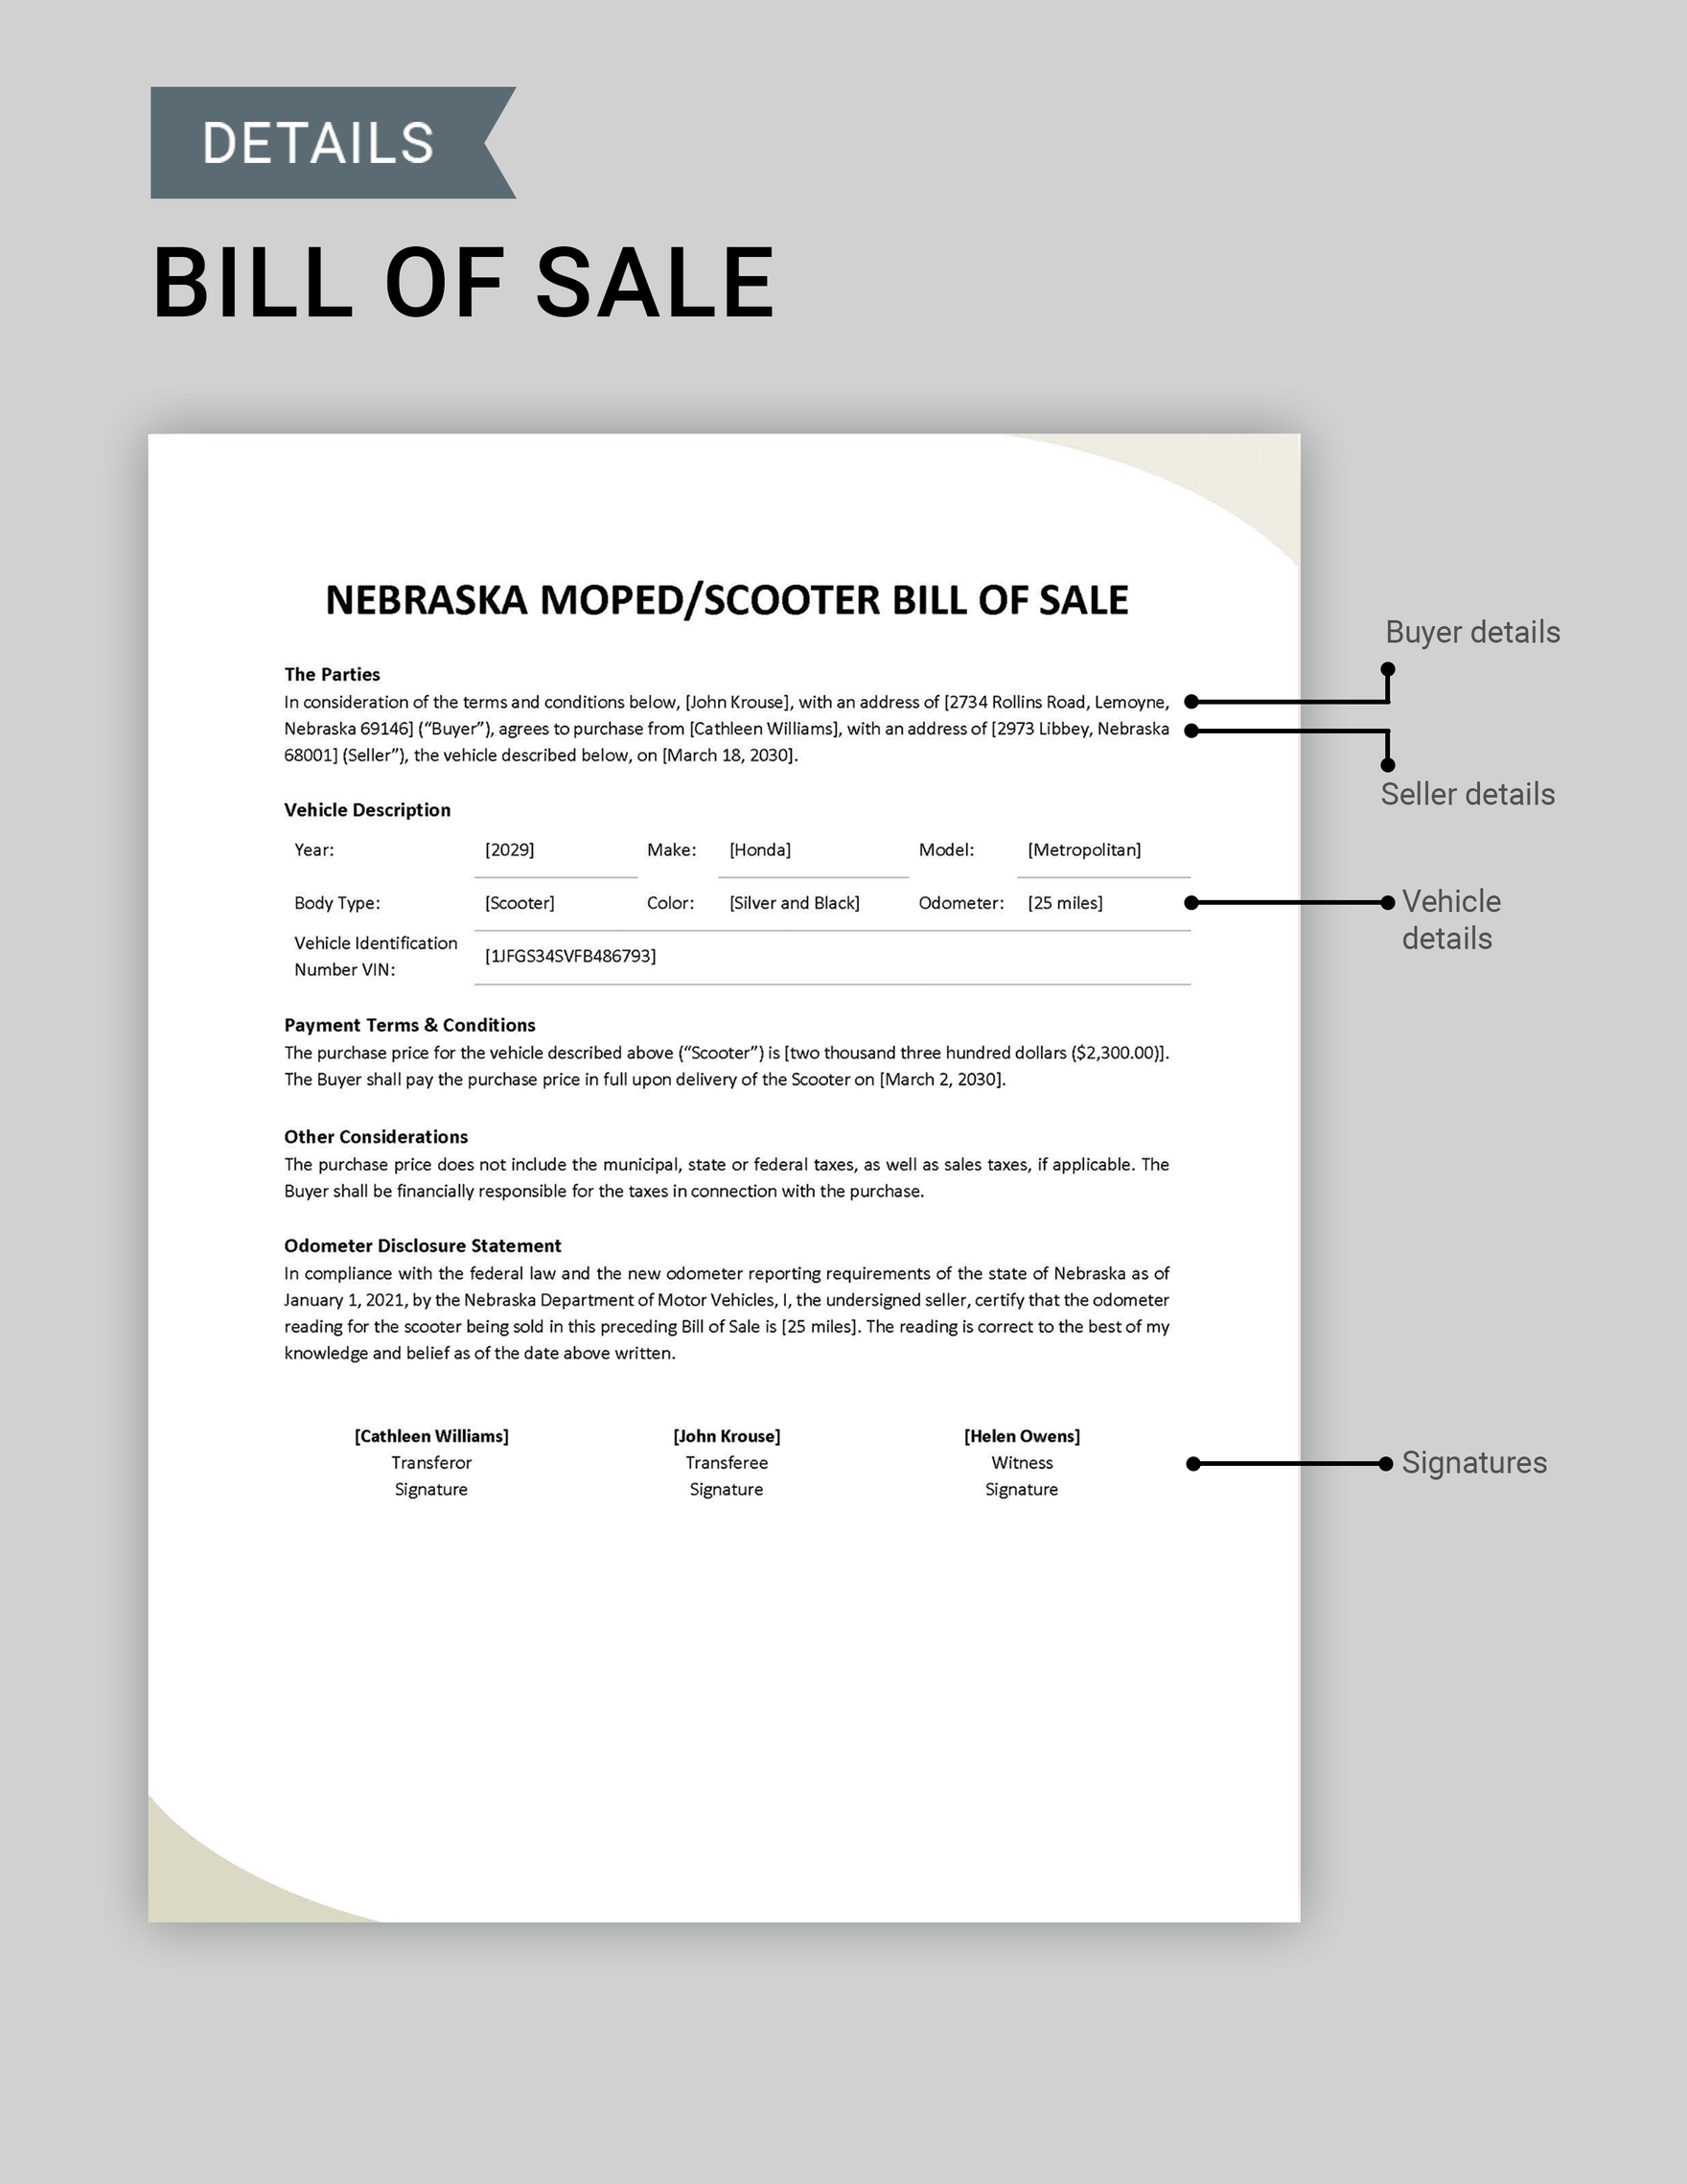 Nebraska Moped / Scooter Bill of Sale Template